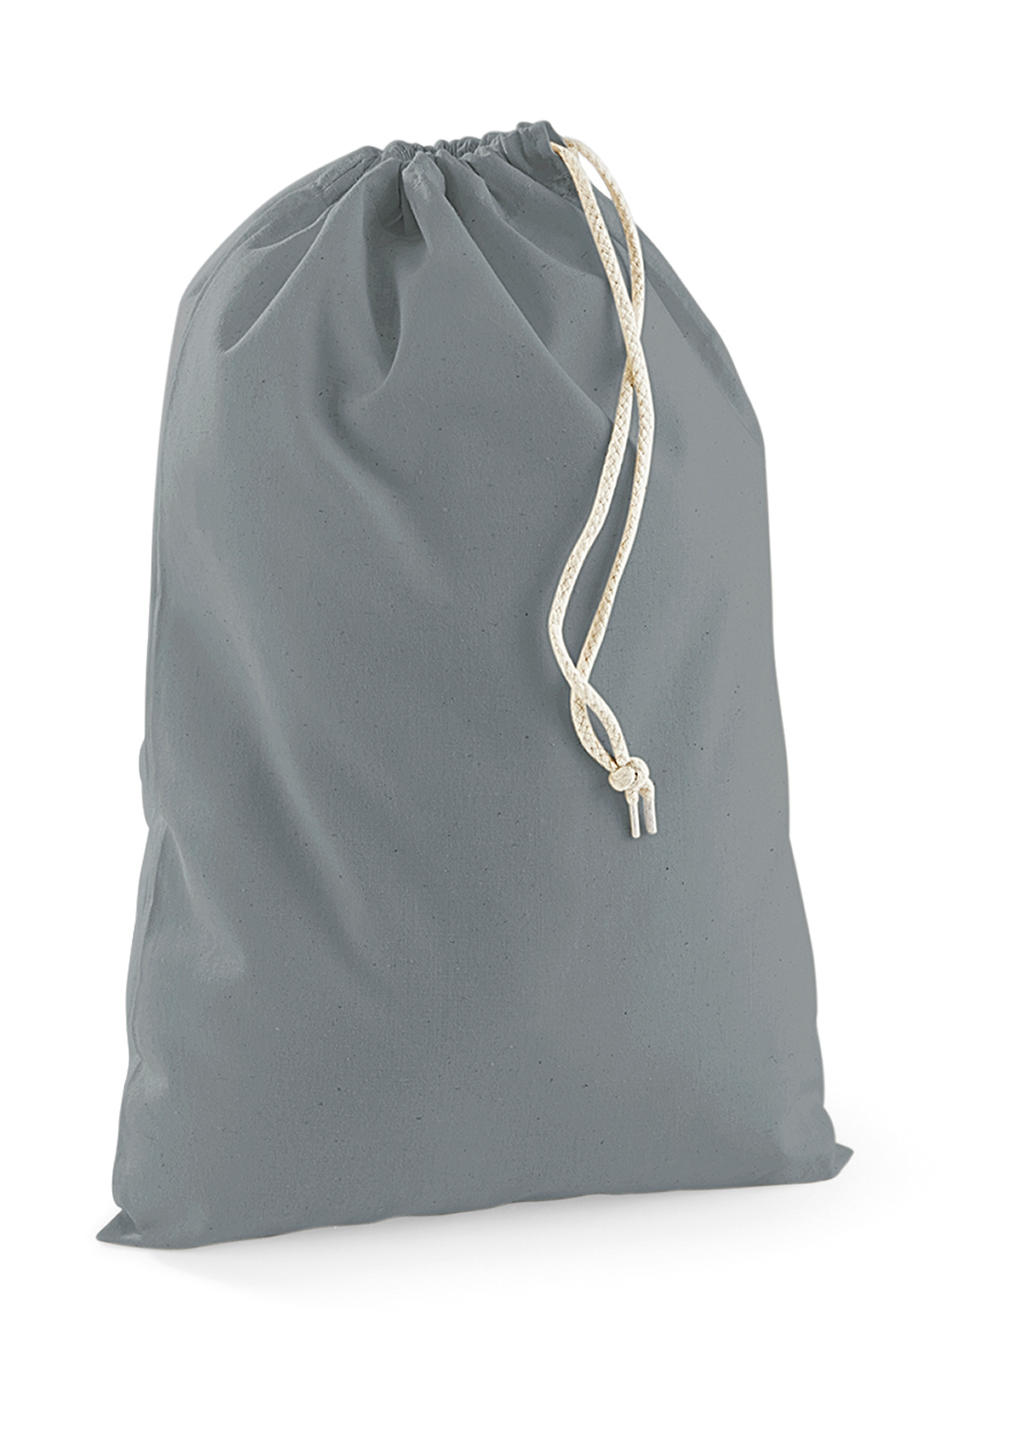  Cotton Stuff Bag in Farbe Pure Grey